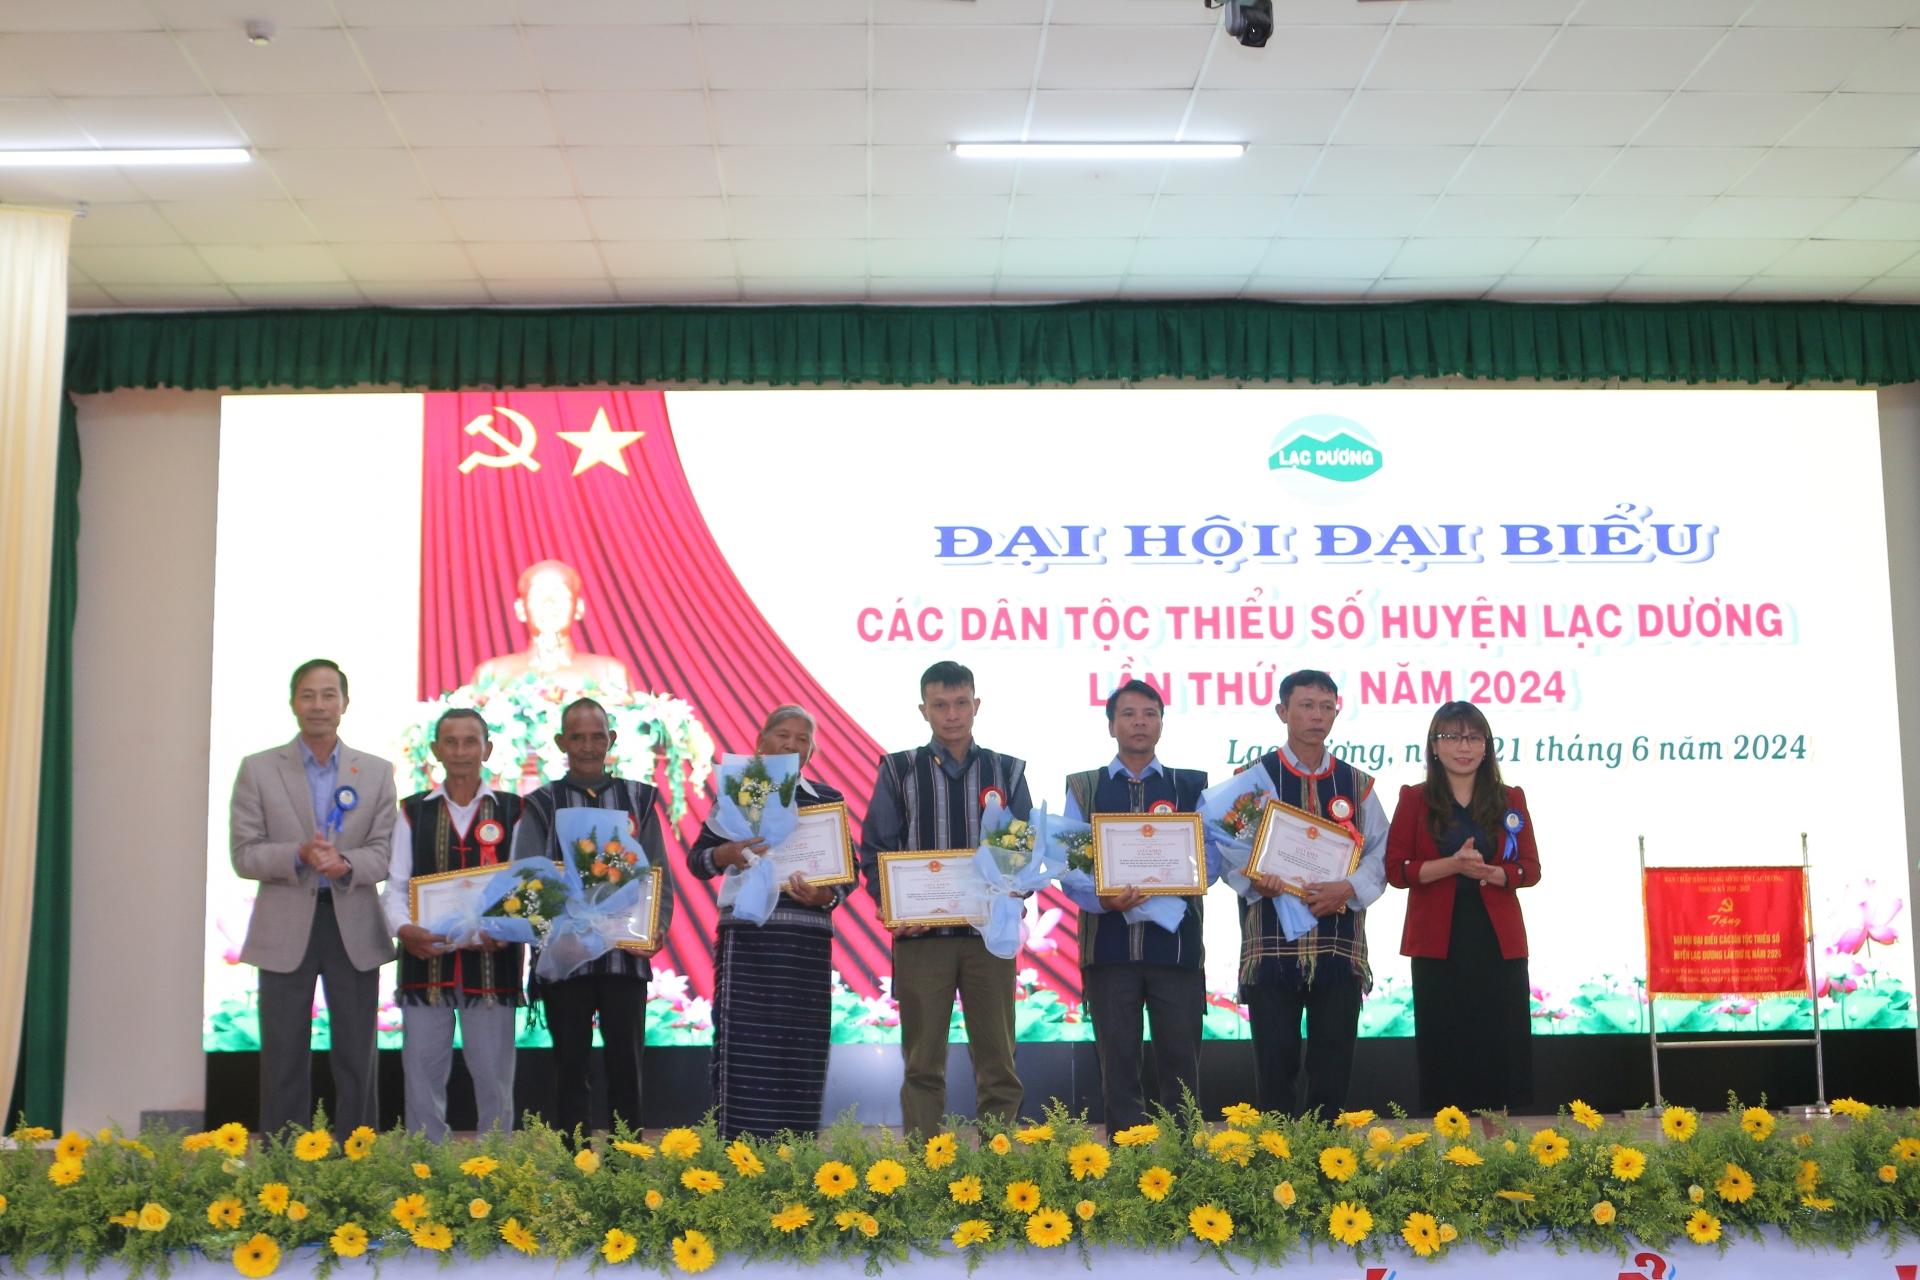 Chủ tịch Ủy ban MTTQ Việt Nam huyện Lạc Dương Bùi Văn Thụy và Trưởng ban Tuyên giáo Huyện ủy Nguyễn Thị Cẩm giang trao giấy jhen của UBND huyện cho các cámnha6n